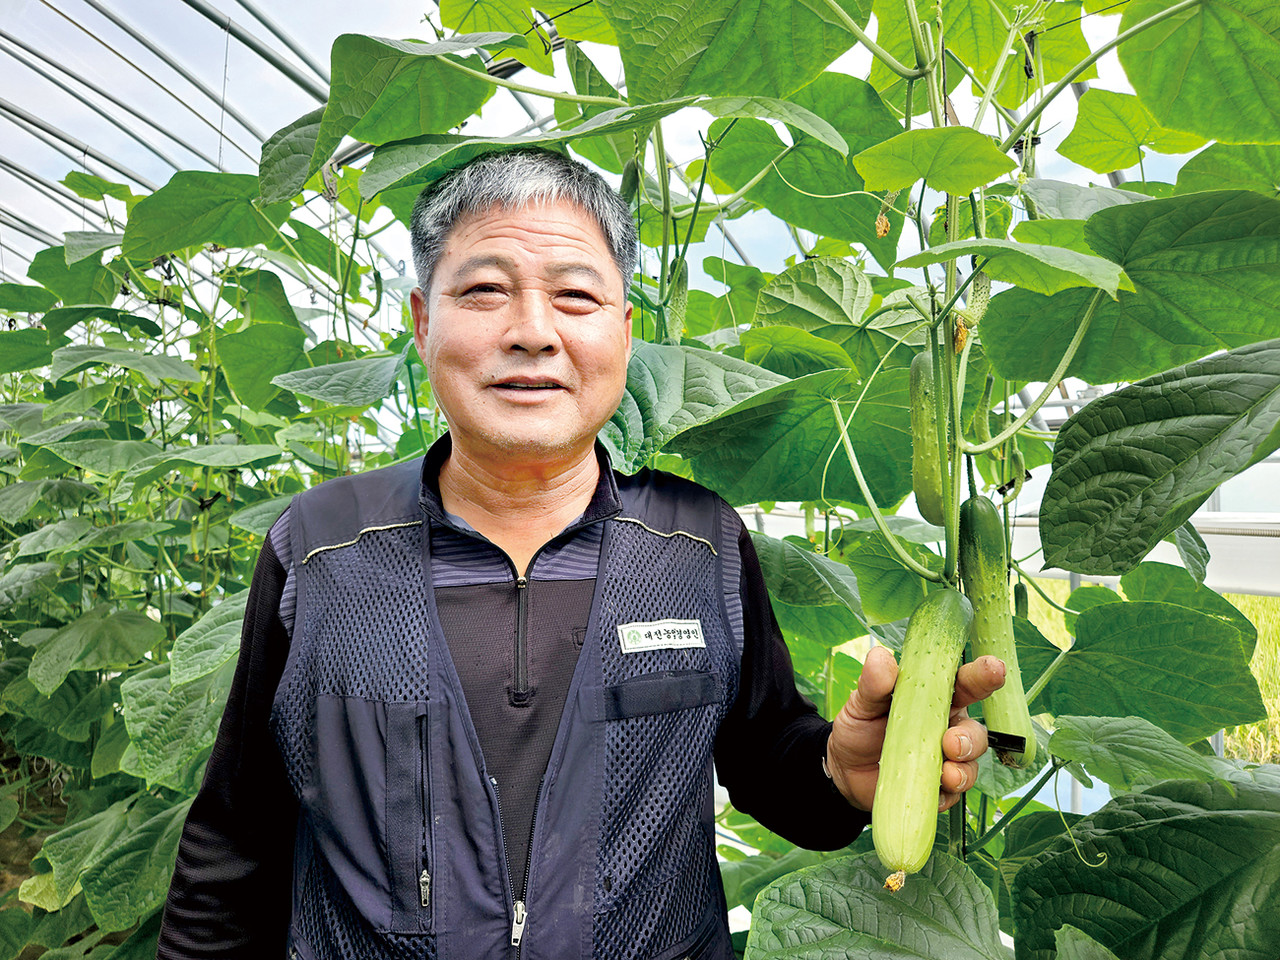 박노창(63) 한국후계농업경영인대전광역시연합회 수석부회장은 정직한 땀을 통한 고품질 농작물 생산을 약속했다.